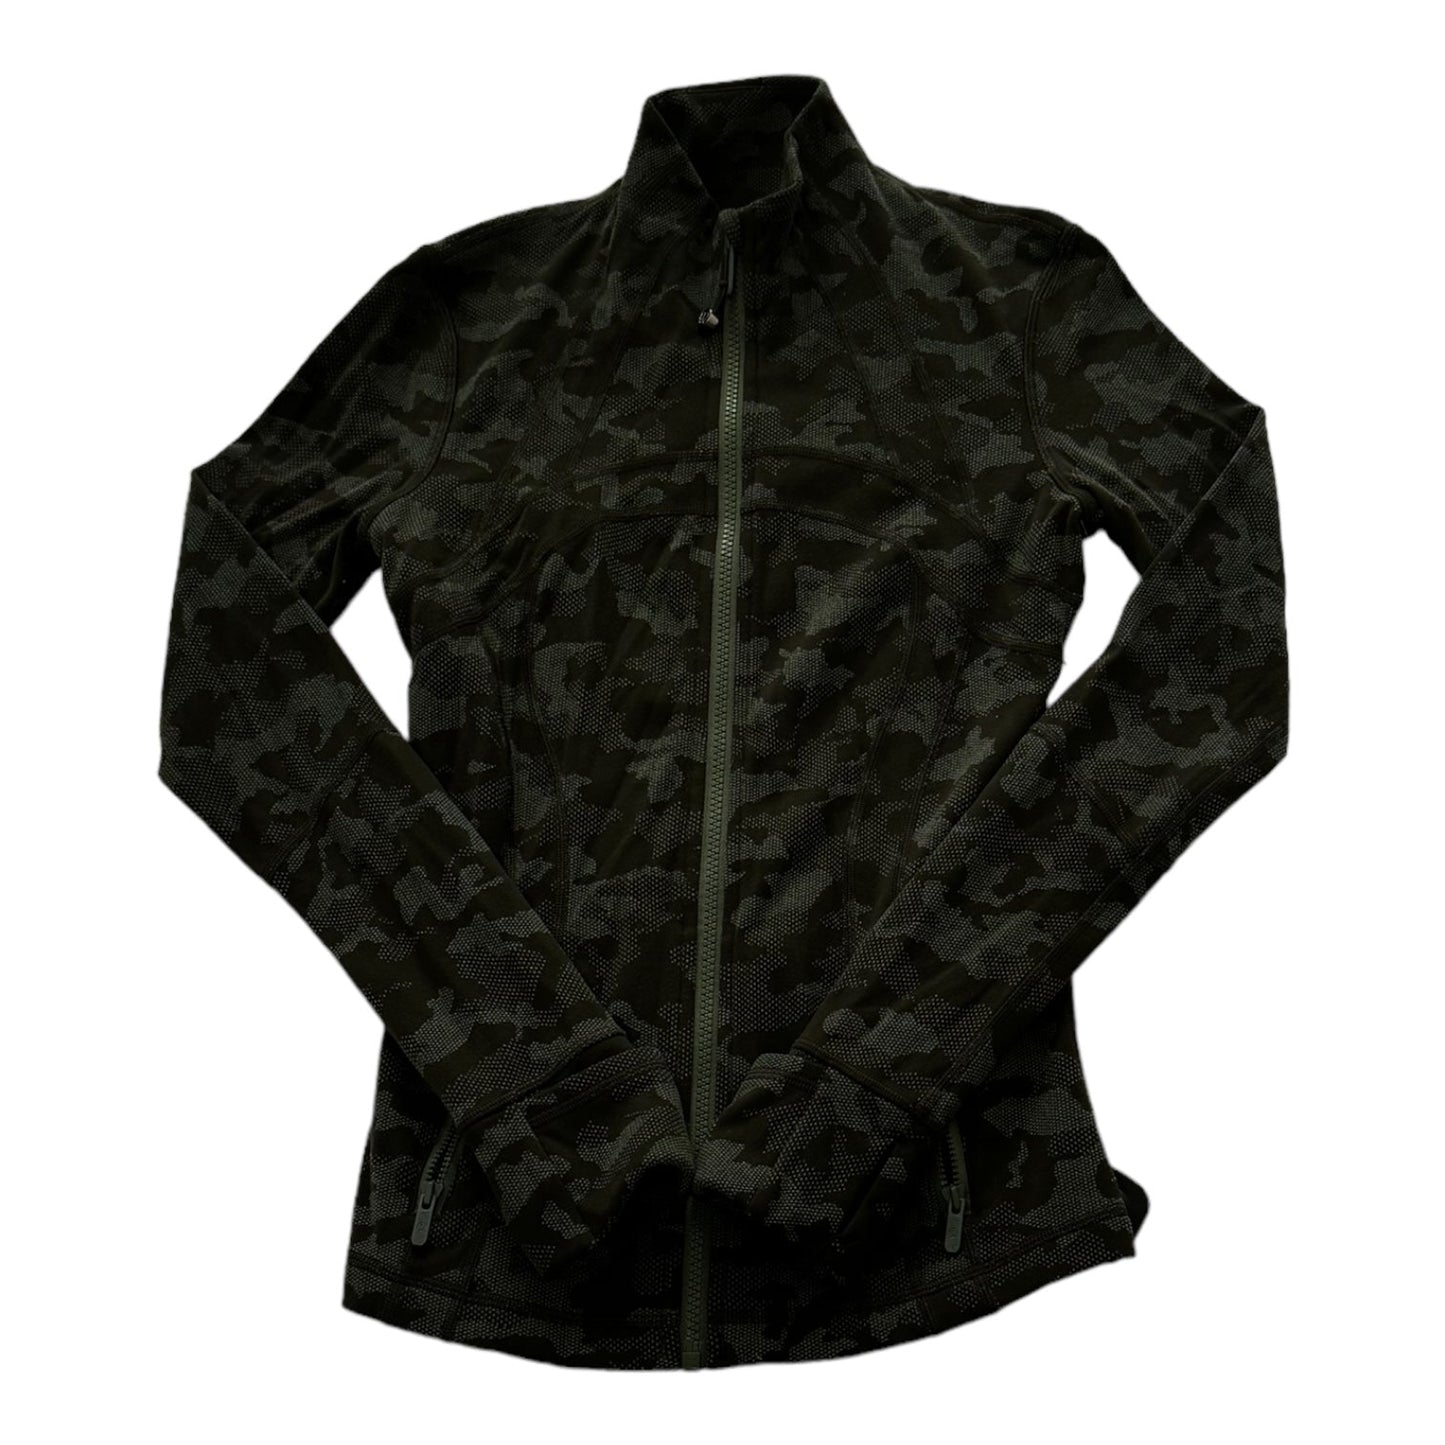 Camouflage Print Athletic Jacket Lululemon, Size 4